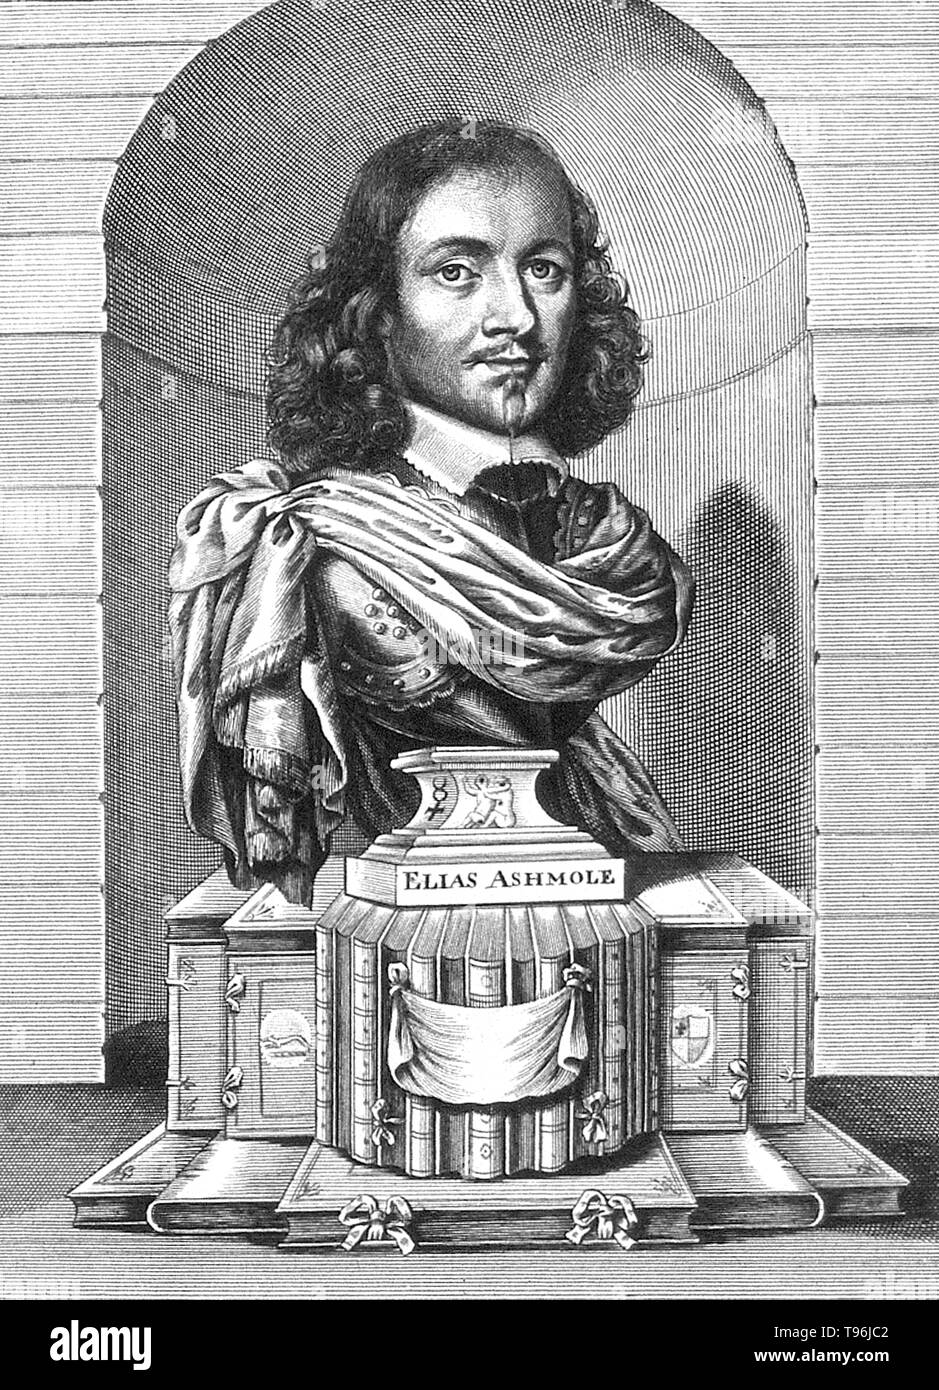 Elias Ashmole (23 mai 1617 - 18 mai 1692) était un homme politique français, antiquaire, officier des armes, astrologue et élève de l'alchimie. Sa bibliothèque reflète ses perspectives intellectuelle, y compris des ouvrages sur l'histoire anglaise, le droit, la numismatique, chorography, Alchimie, astrologie, l'astronomie et la botanique. Bien qu'il était l'un de la fondation membres de la Royal Society, une institution clé dans le développement de la science expérimentale, ses intérêts ont été antiquaire et mystique ainsi que des scientifiques. Banque D'Images